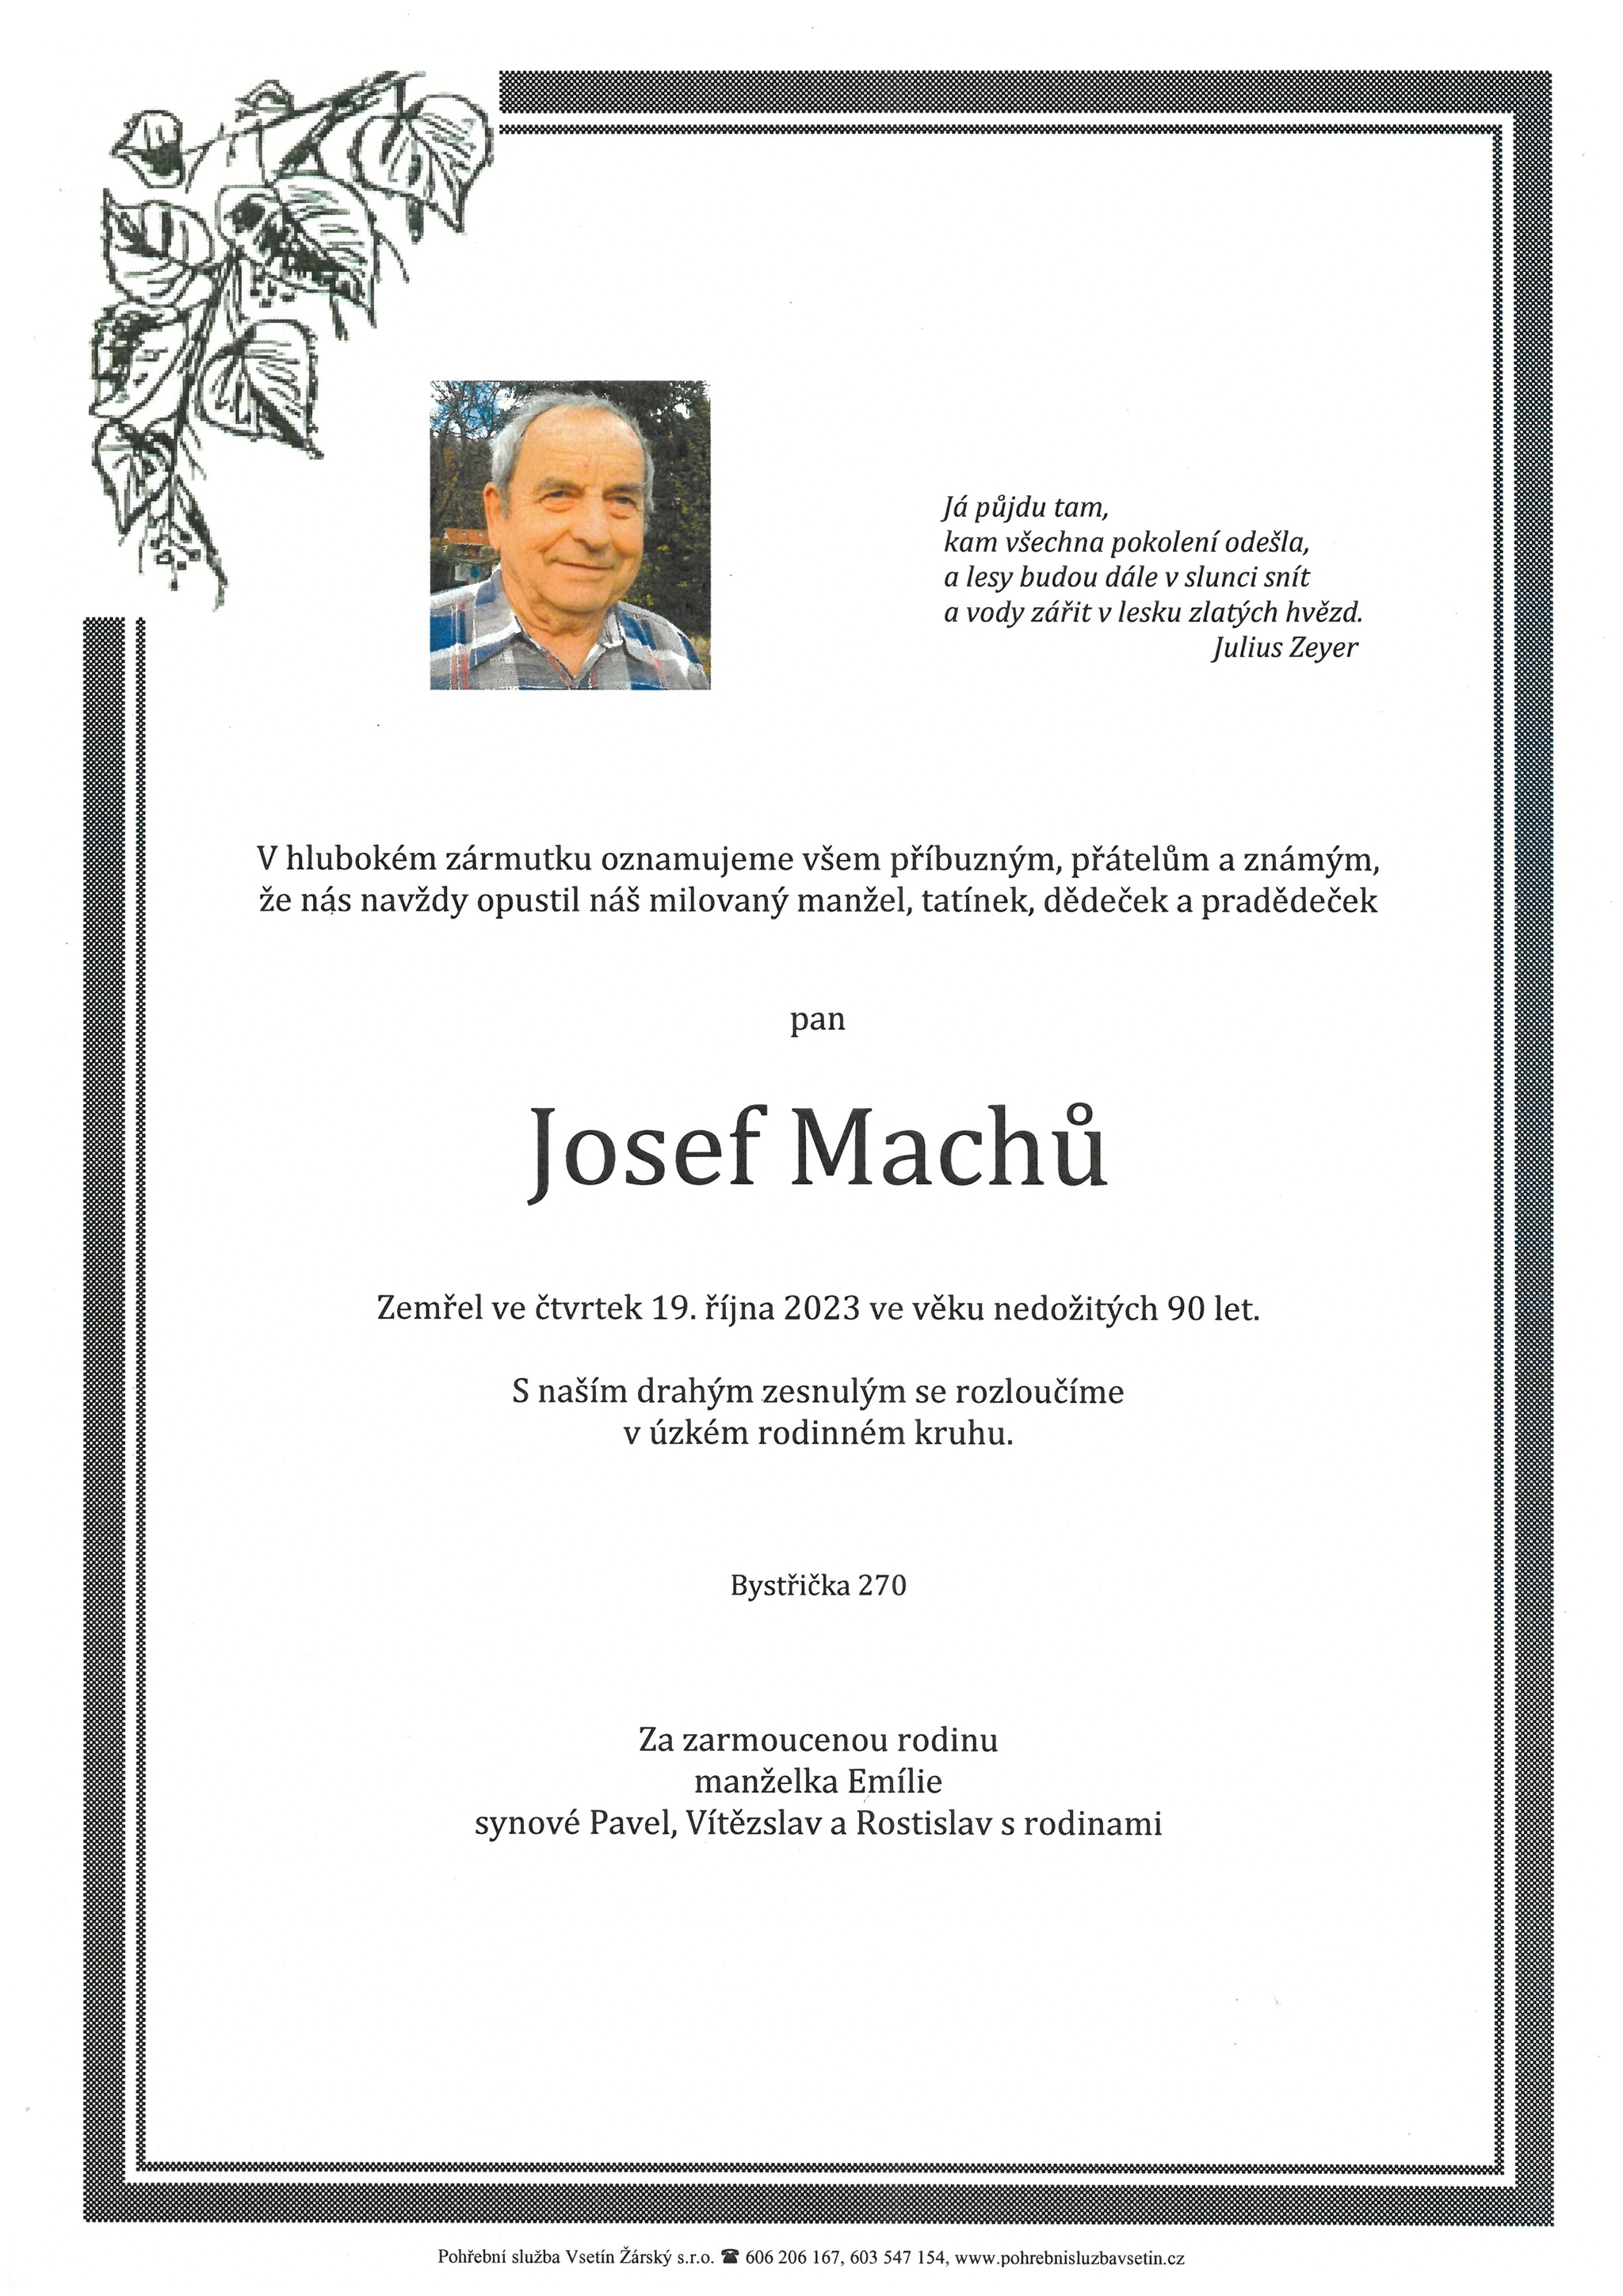 Josef Machů